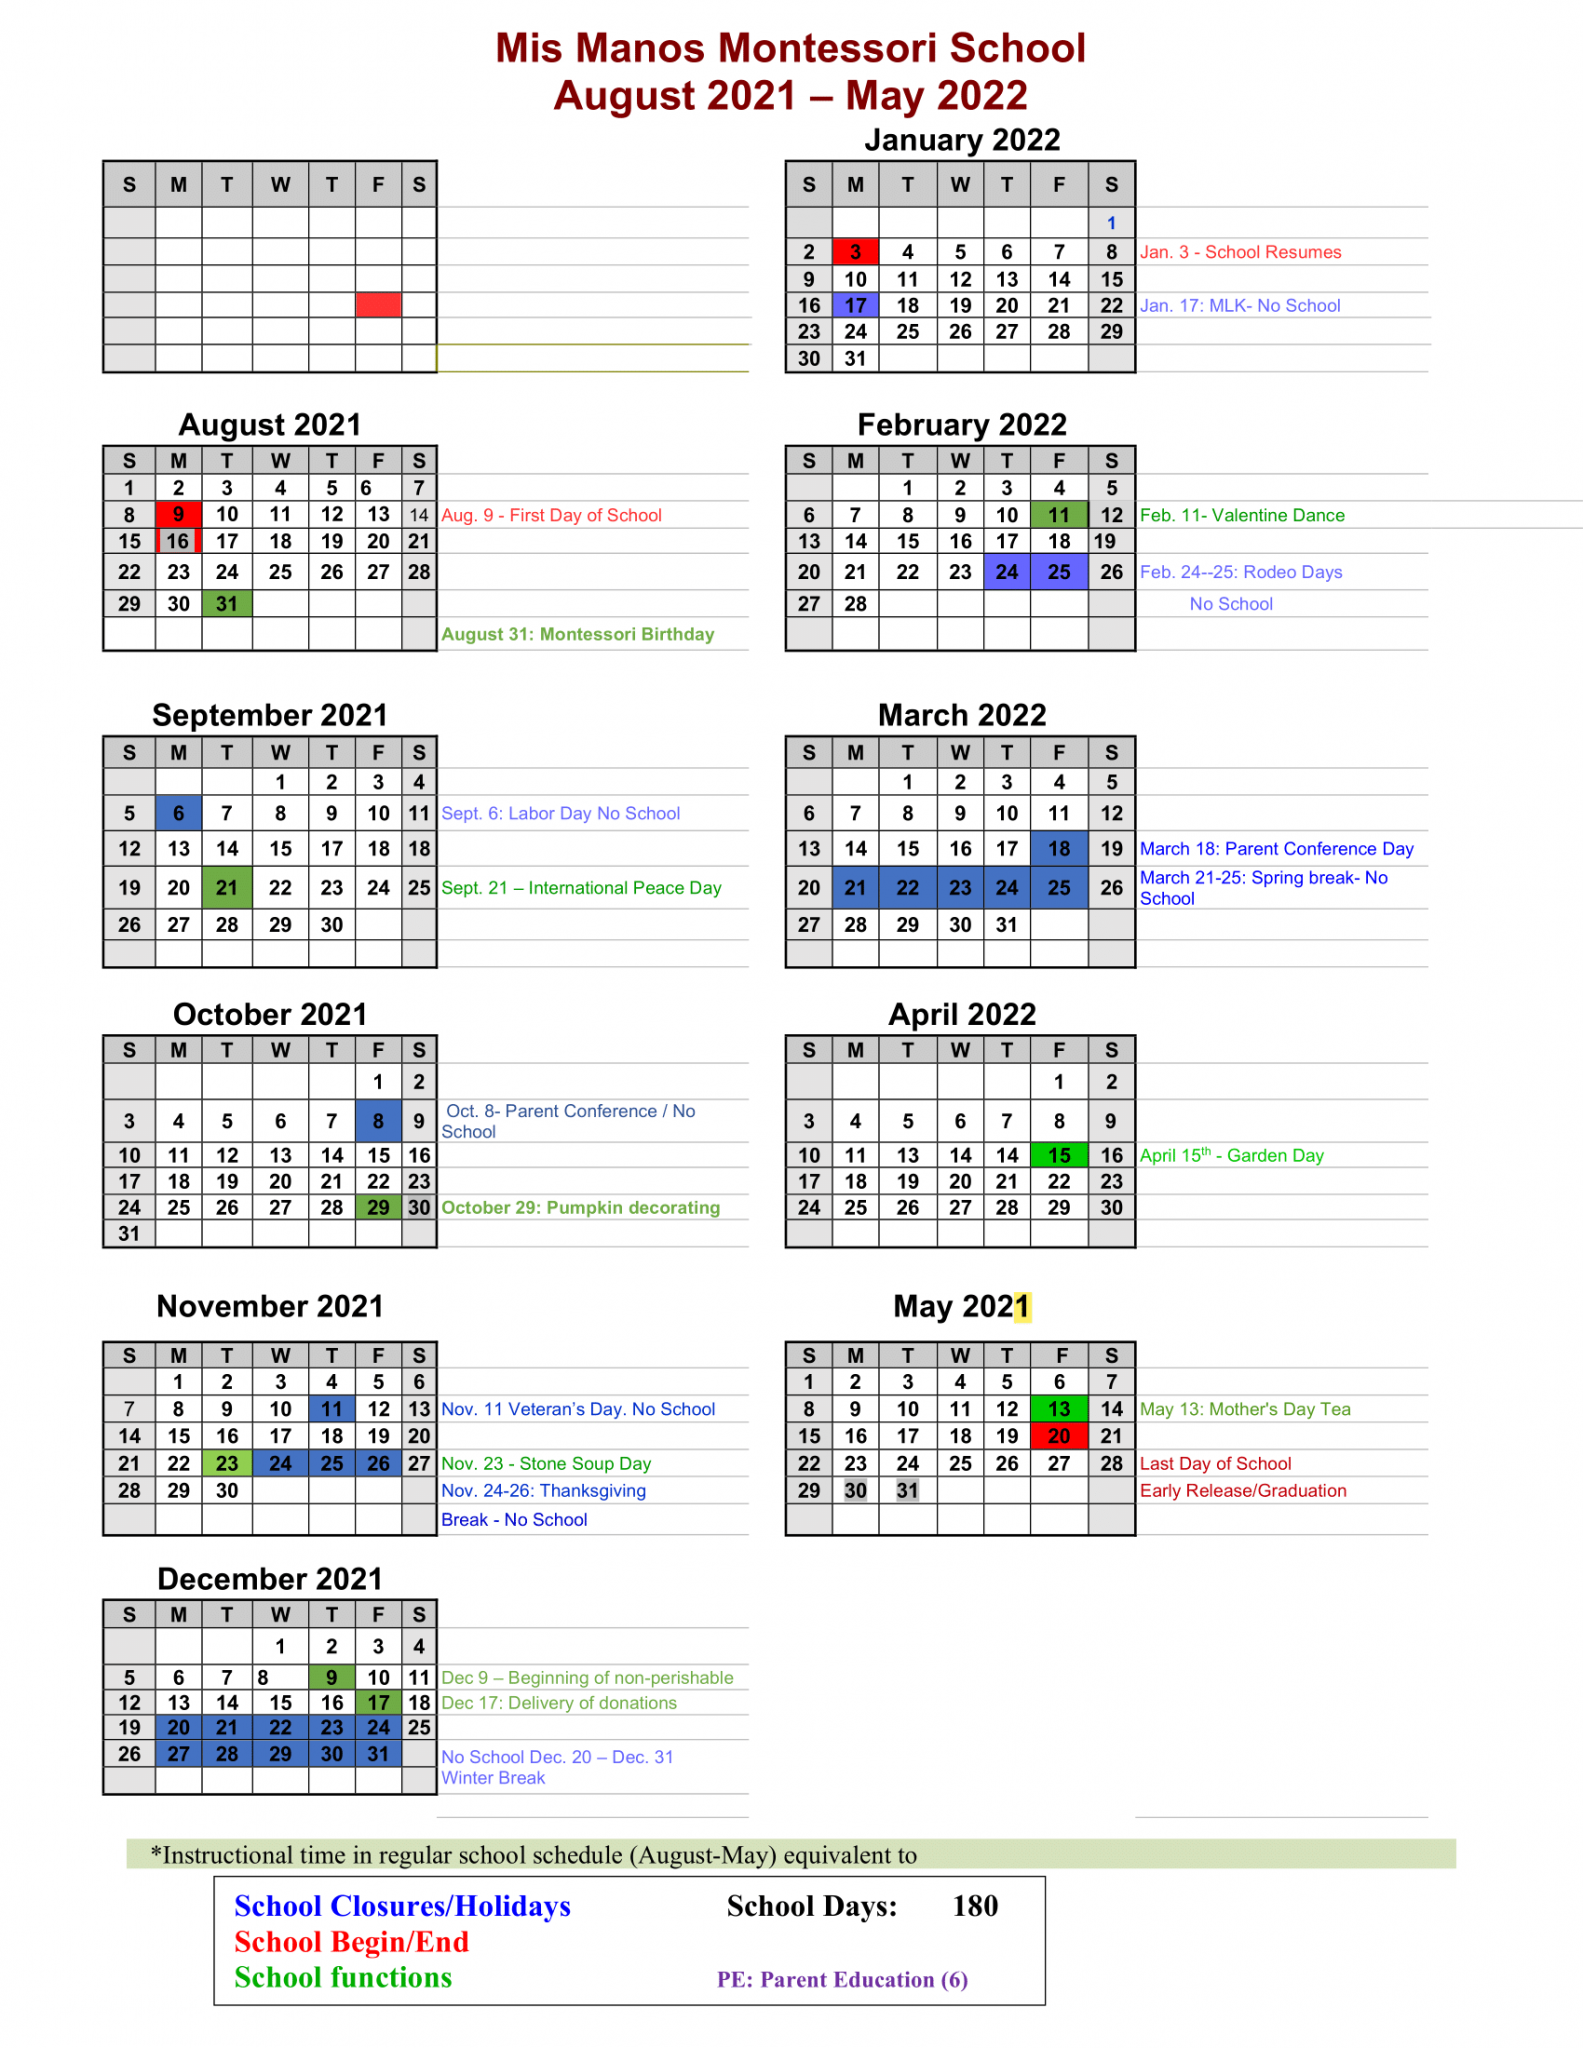 Calendar Mis Manos Montessori School